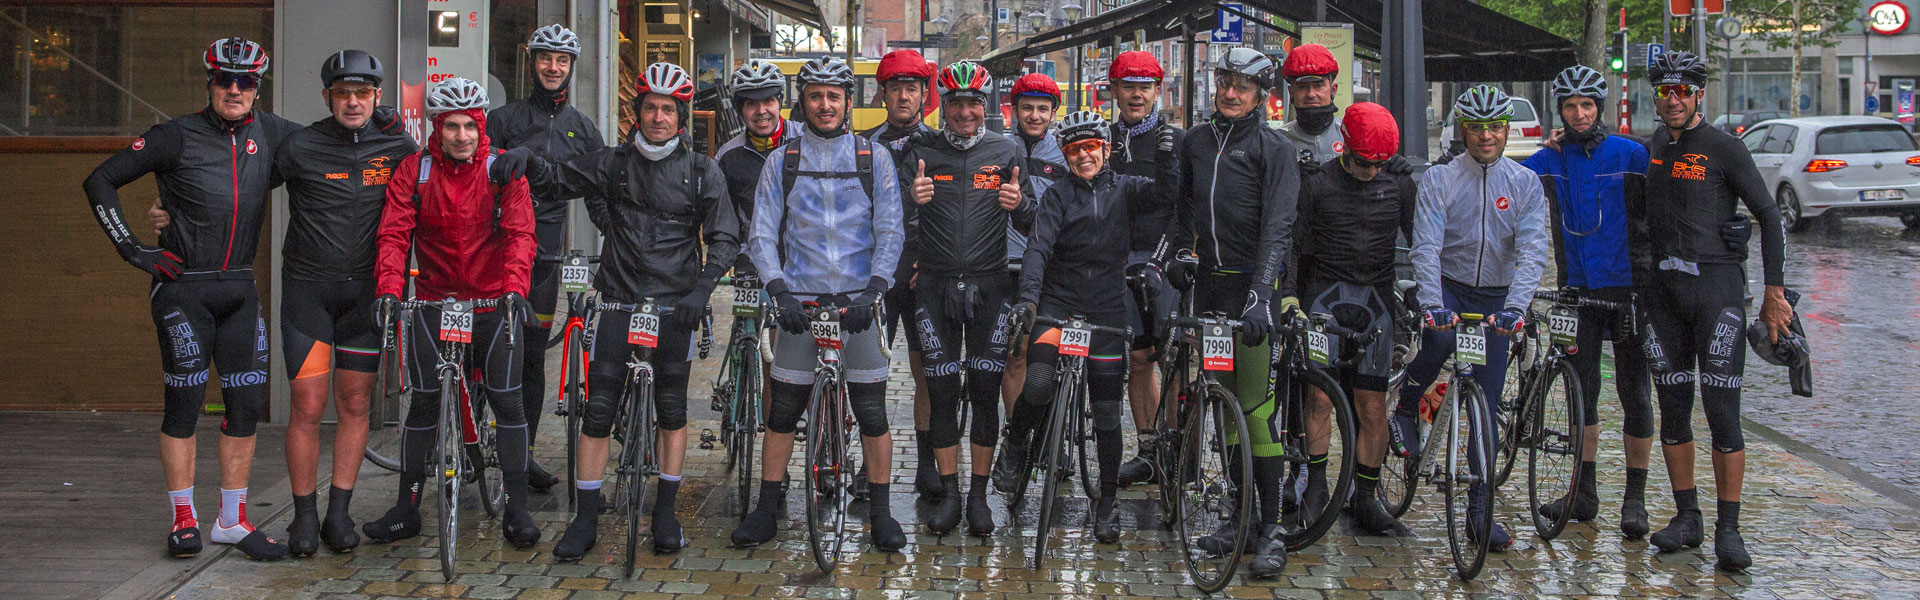 Liegi Bastogne Liegi 2018 con Bike Division Tour Operator